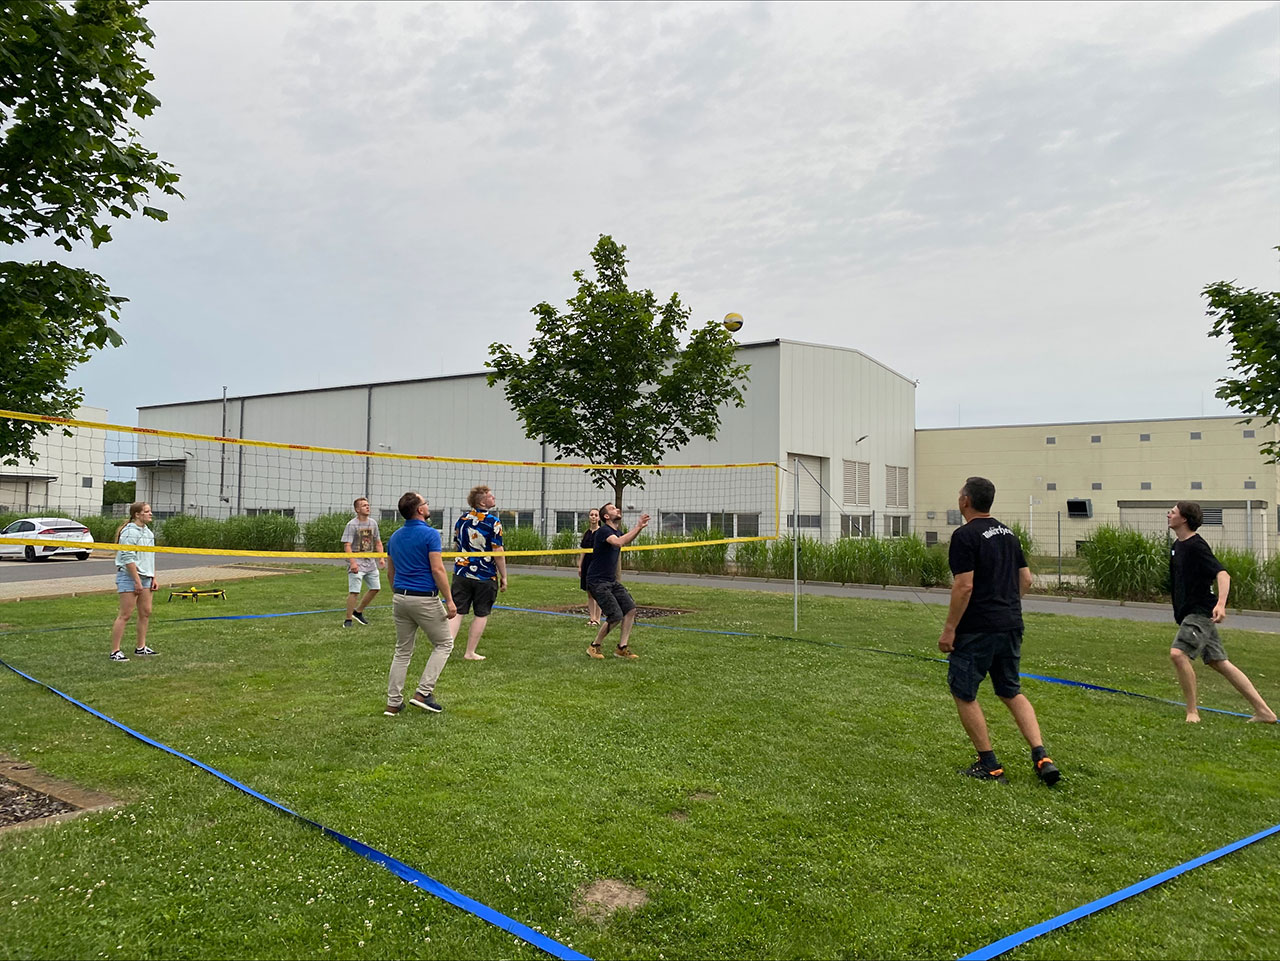 Zwischen Liegestühlen, Volleyballfeld, Shuffleboard und Dartscheibe wurden erste Kontakte geknüpft und beim Zeltaufbau die Teamfähigkeit geprüft.